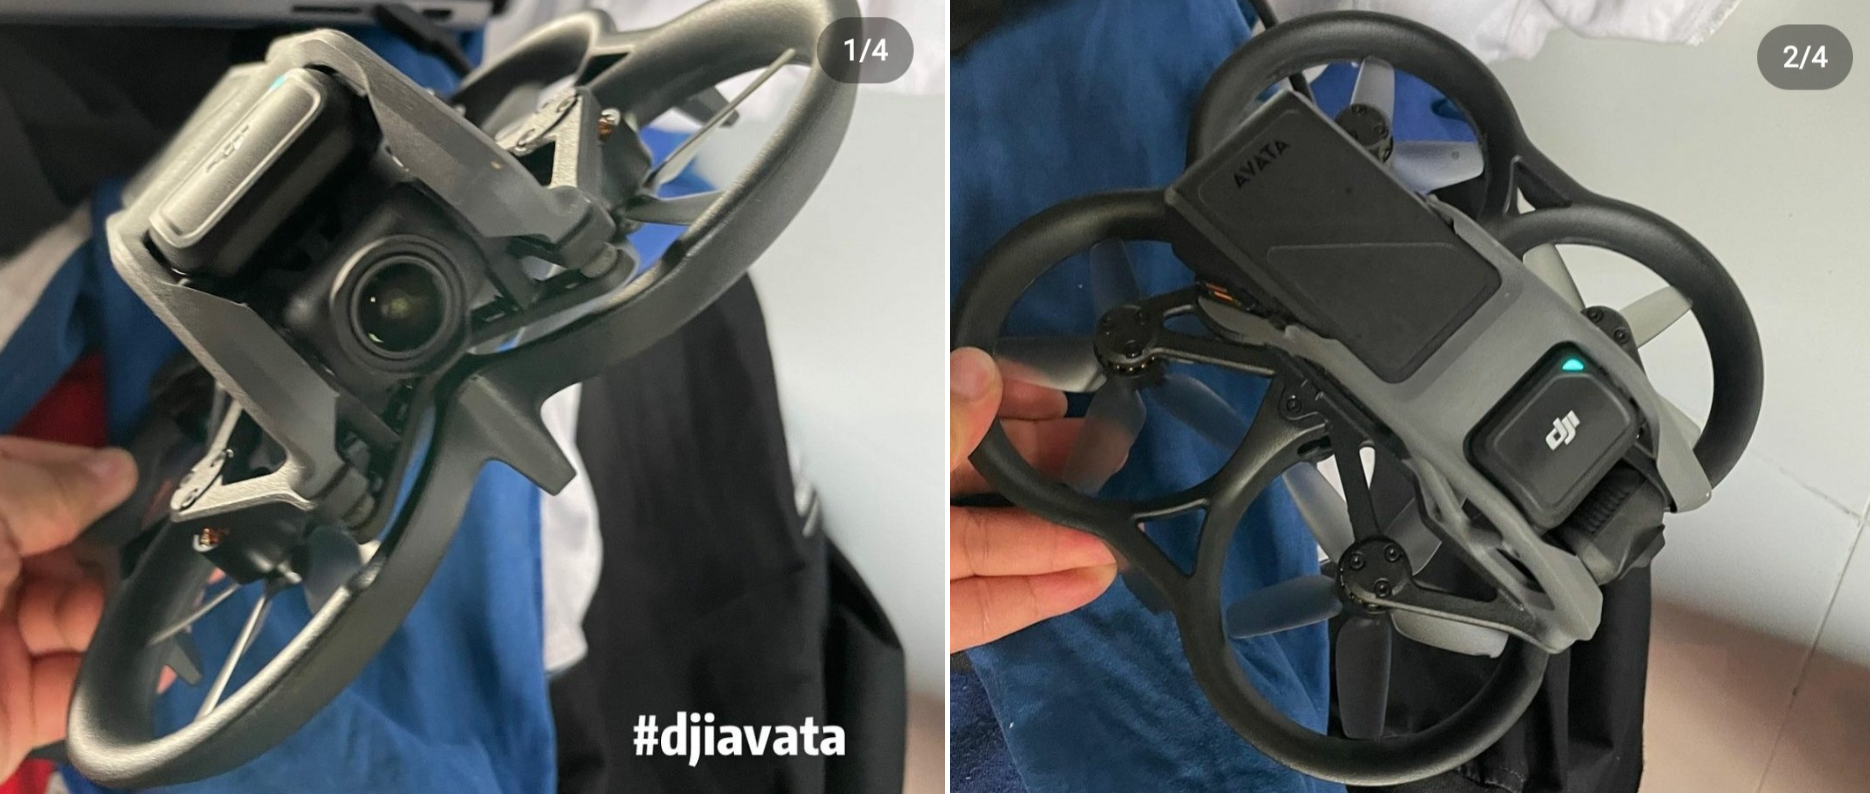 Rilasciate foto e video del drone DJI Avata FPV senza preavviso